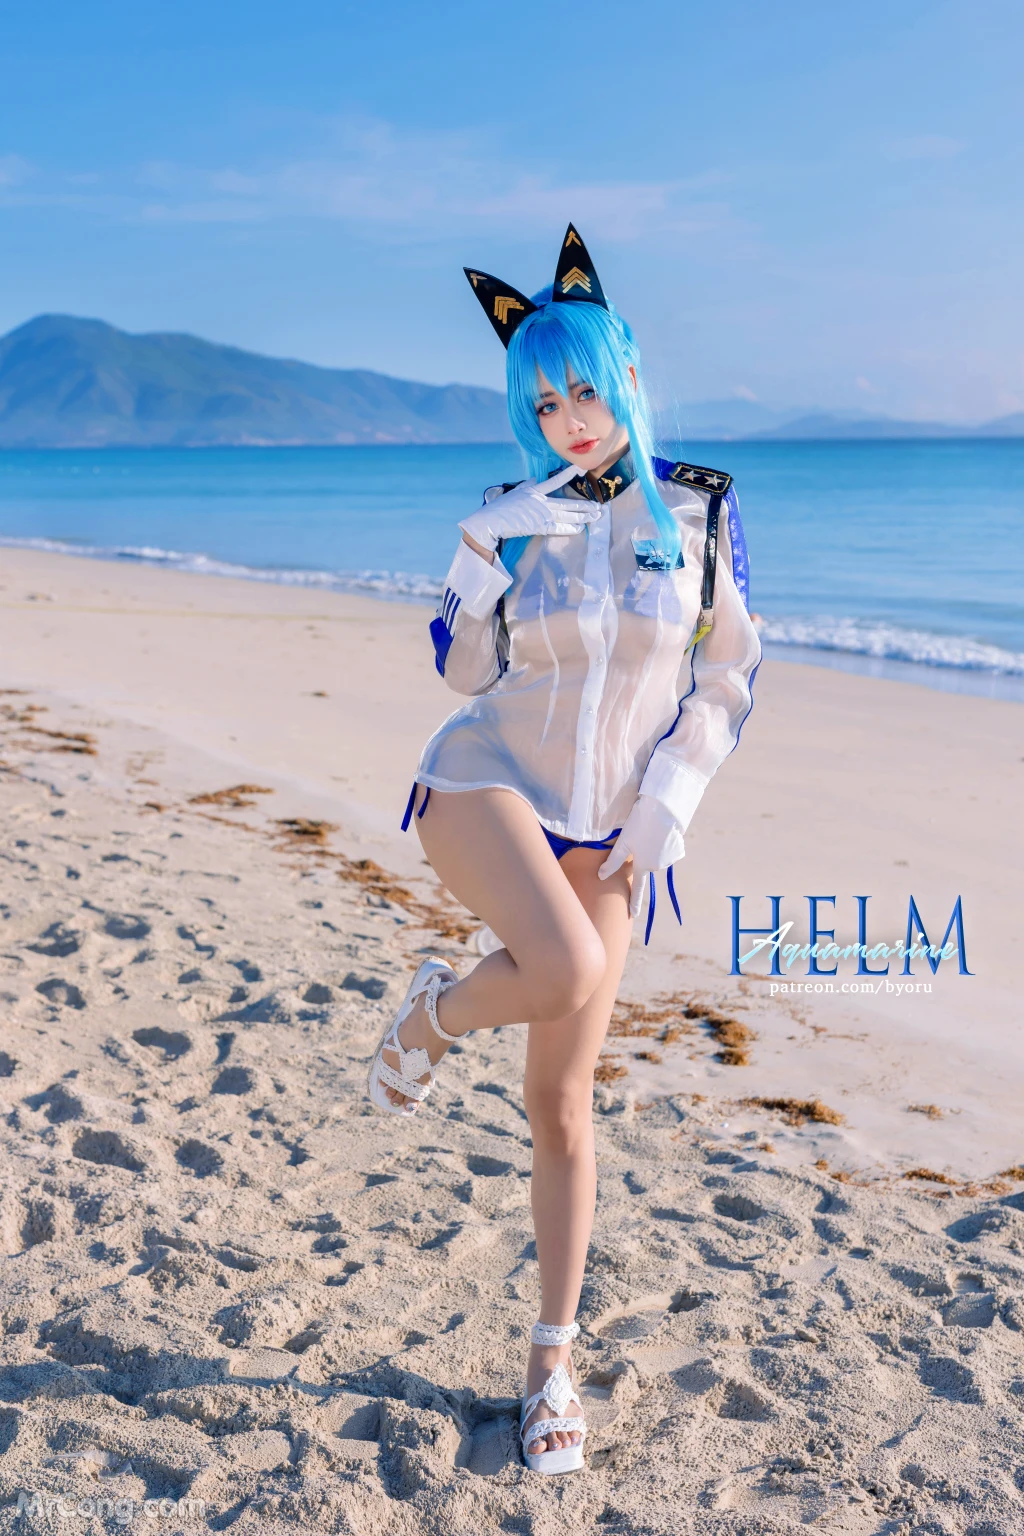 Coser@Byoru: Helm Aquamarine (58 photos)